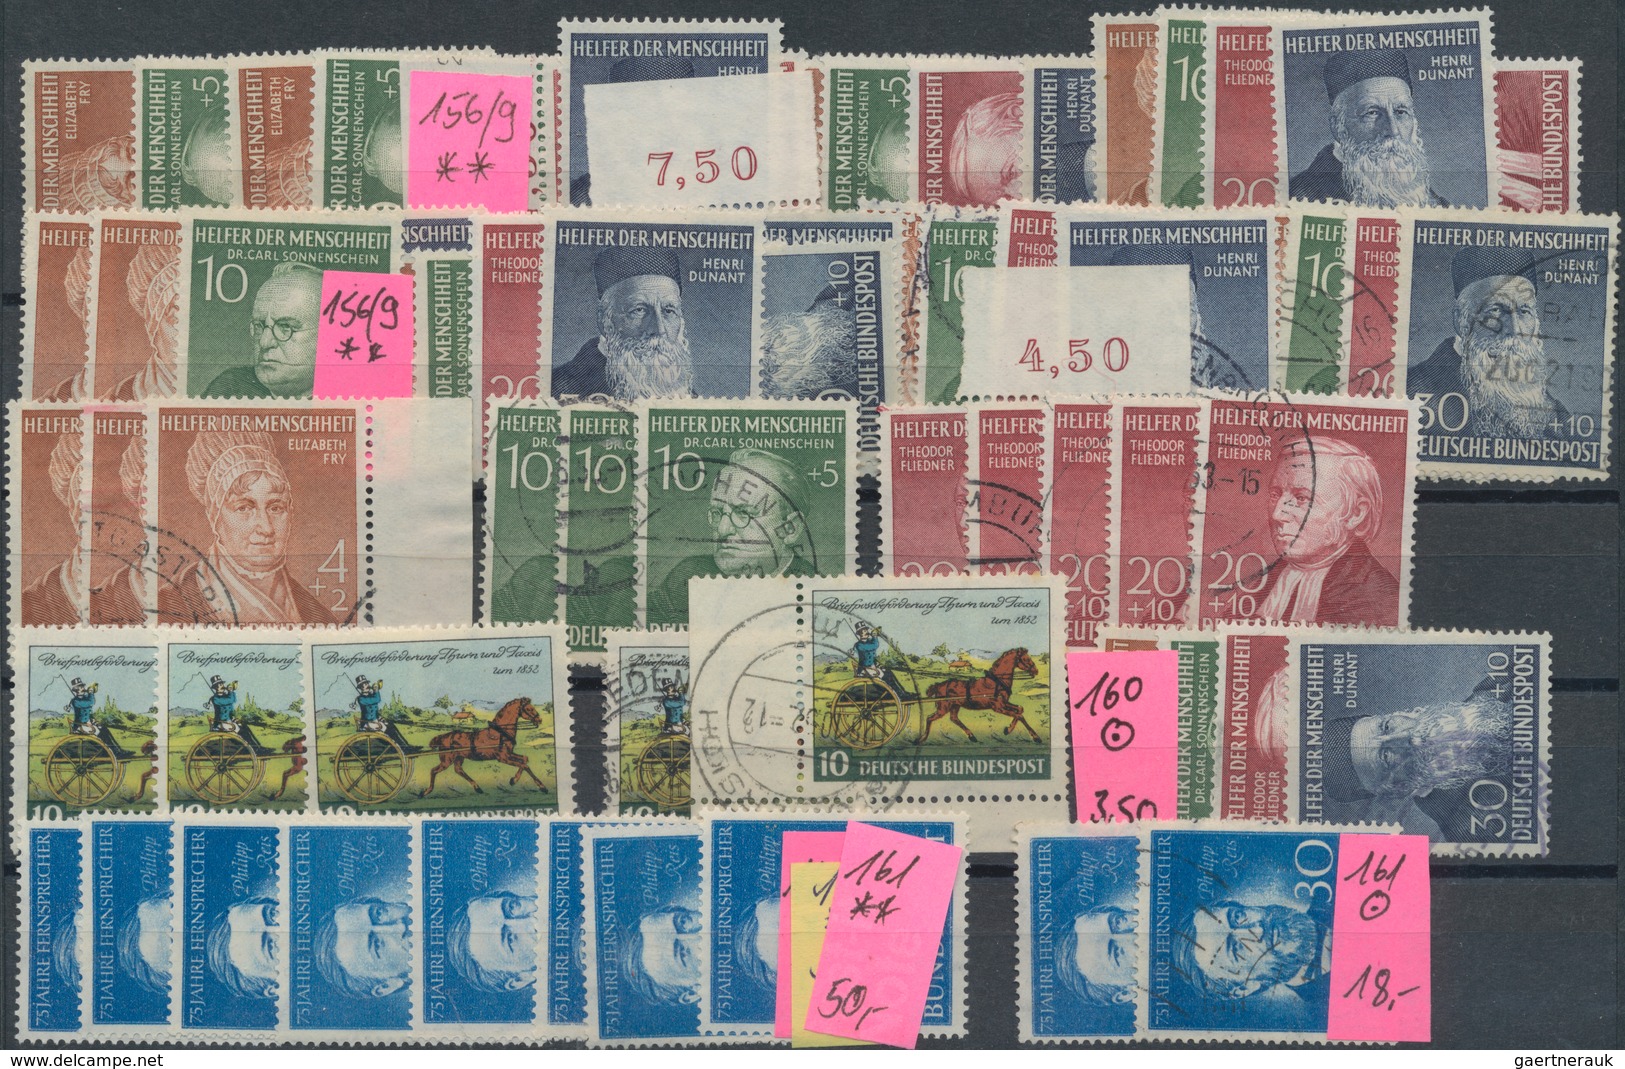 Bundesrepublik Deutschland: 1949/1955, gut besetzter Steckkartenposten mit nur mittleren und bessere